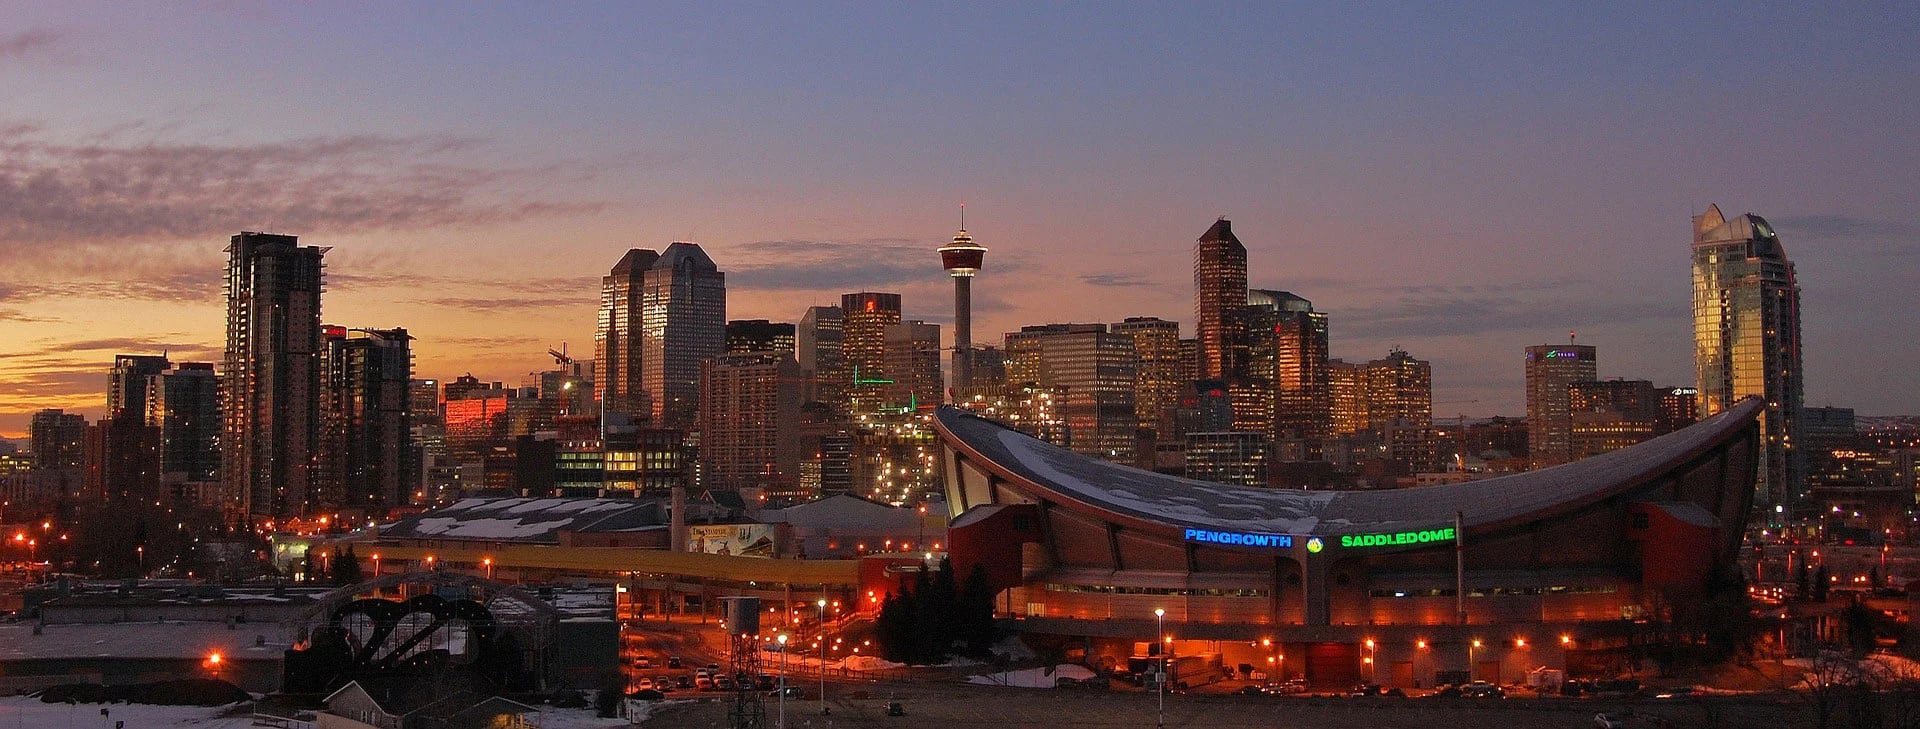 Se trata de la mayor ciudad de la provincia de Alberta en Canadá